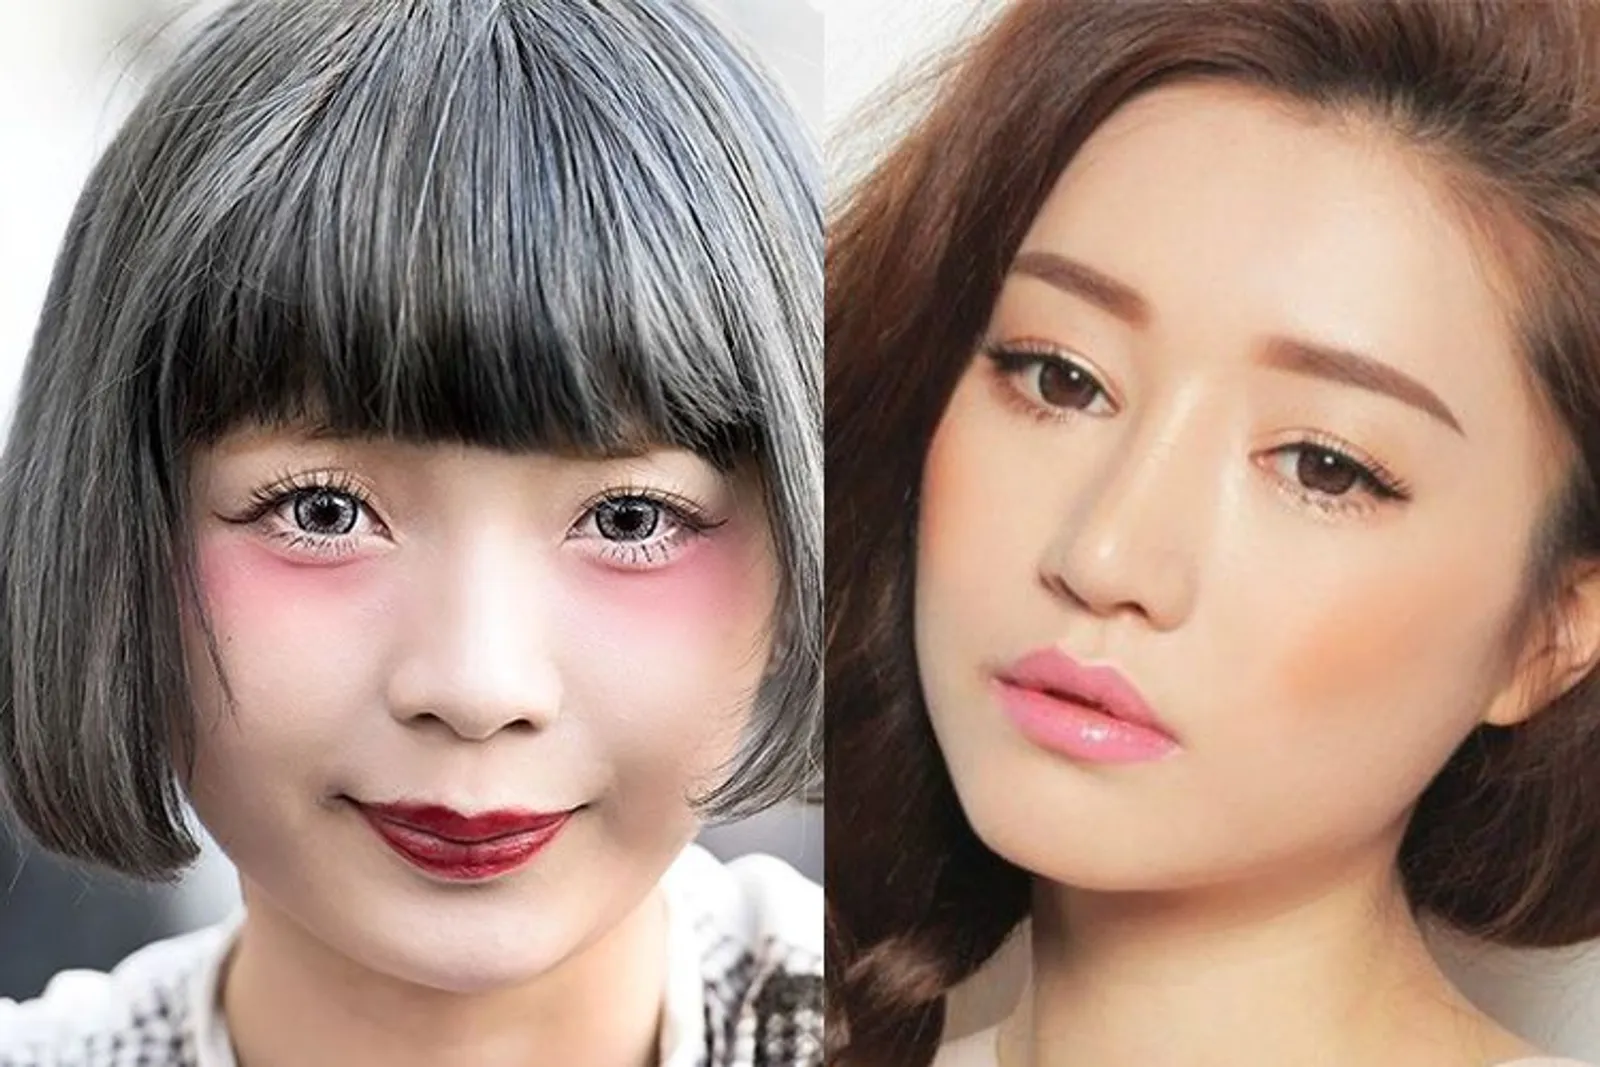 Jepang Vs Korea, Inilah Perbedaan Makeup Keduanya